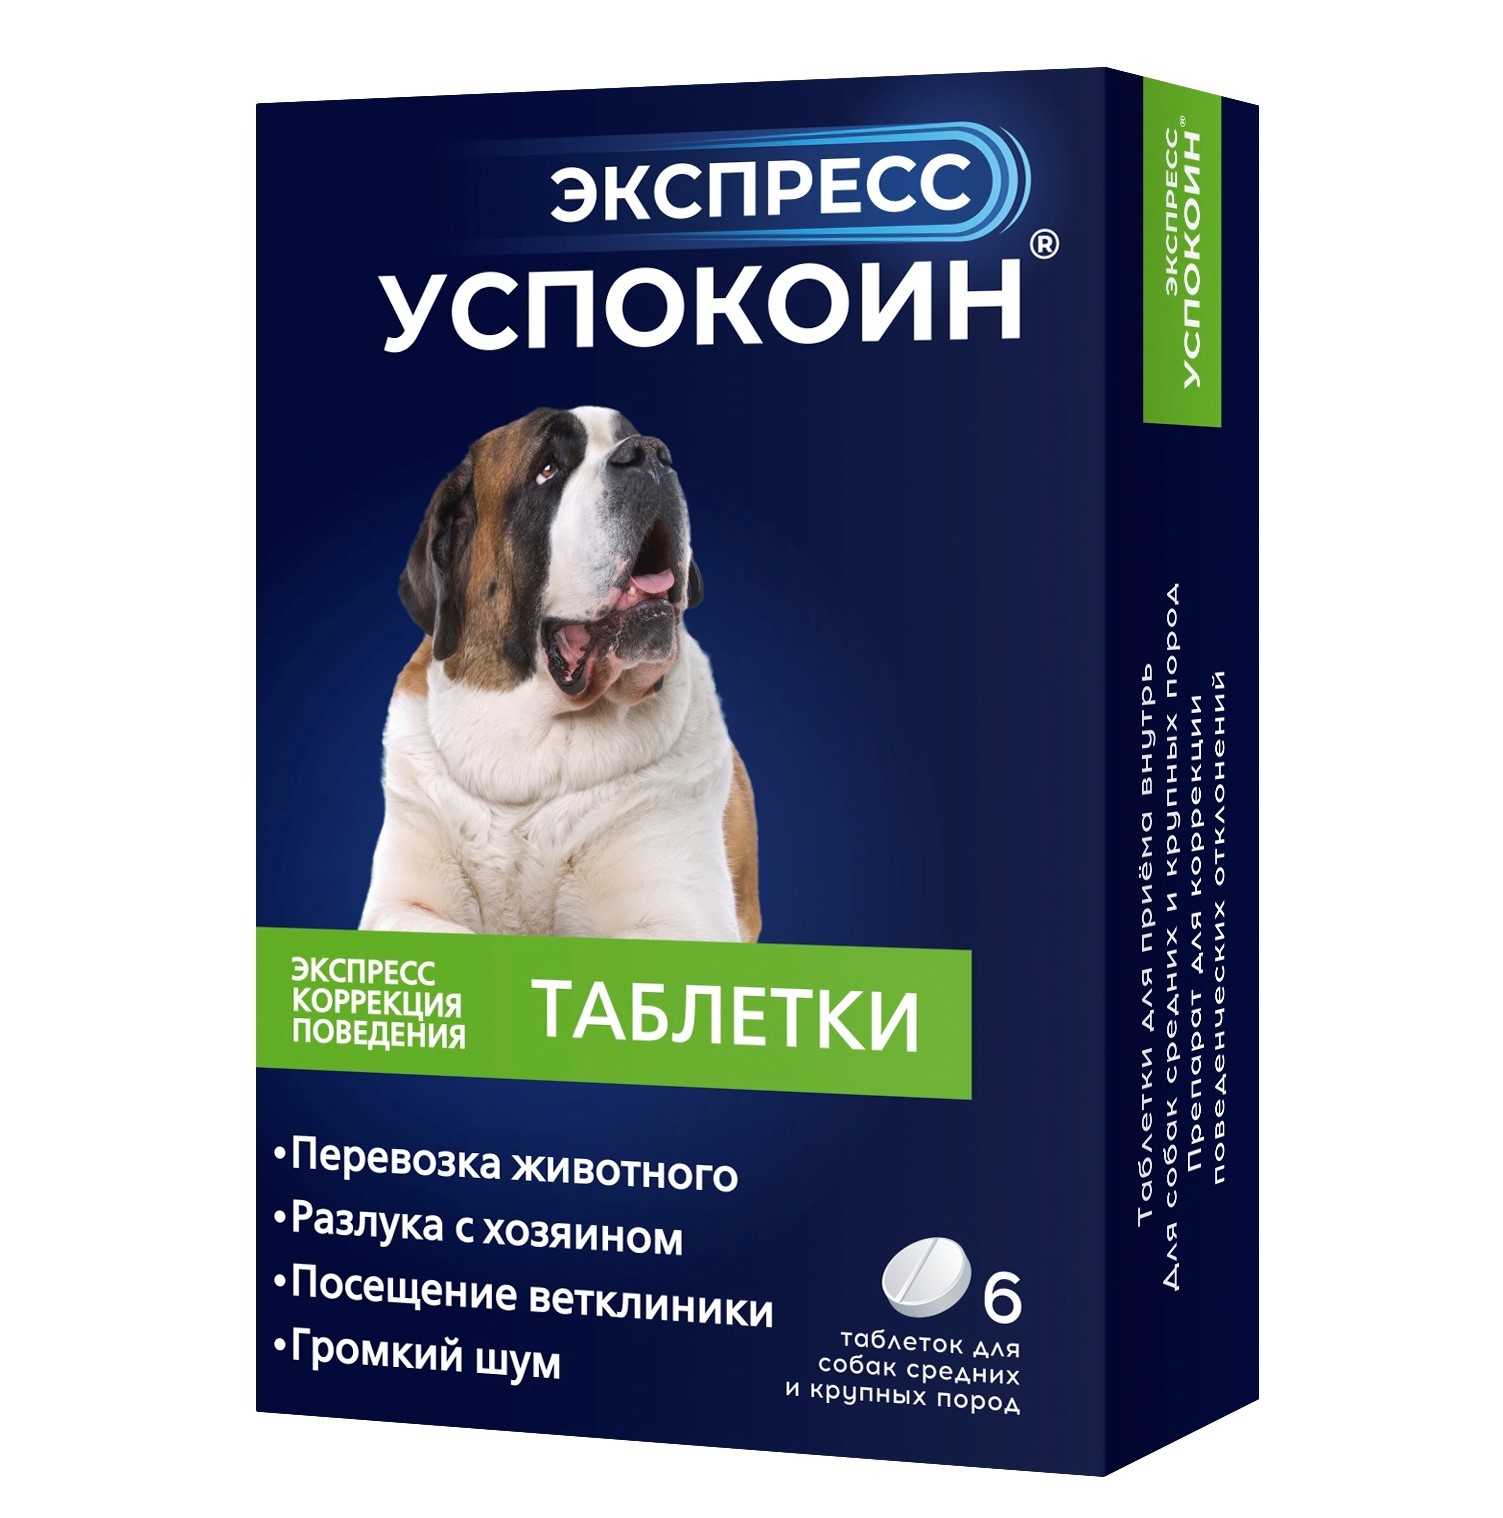 Астрафарм Экспресс Успокоин Таблетки от стресса для собак средних и крупных пород, 6 таблеток